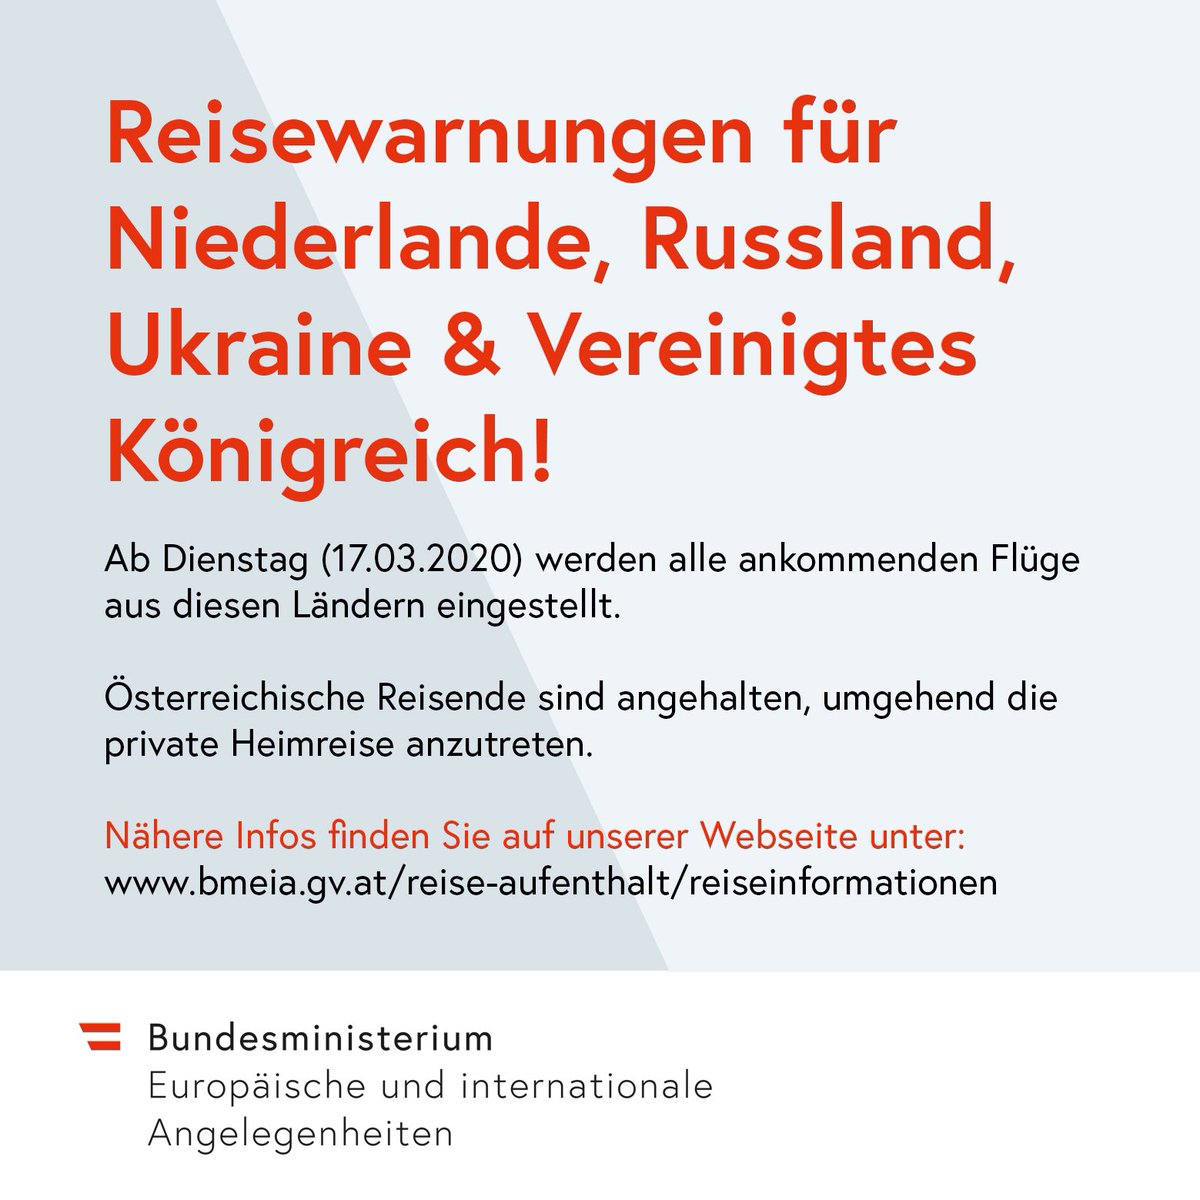 Achtung Reisewarnung #Niederlande, #Russland, #Ukraine & #UK❗️Angesichts der raschen Ausbreitung des #Coronavirus sind 🇦🇹Reisende aufgefordert, umgehend die Heimreise anzutreten. Ab Dienstag (17.03.) werden alle Flüge aus diesen Staaten eingestellt! ▶️ bmeia.gv.at